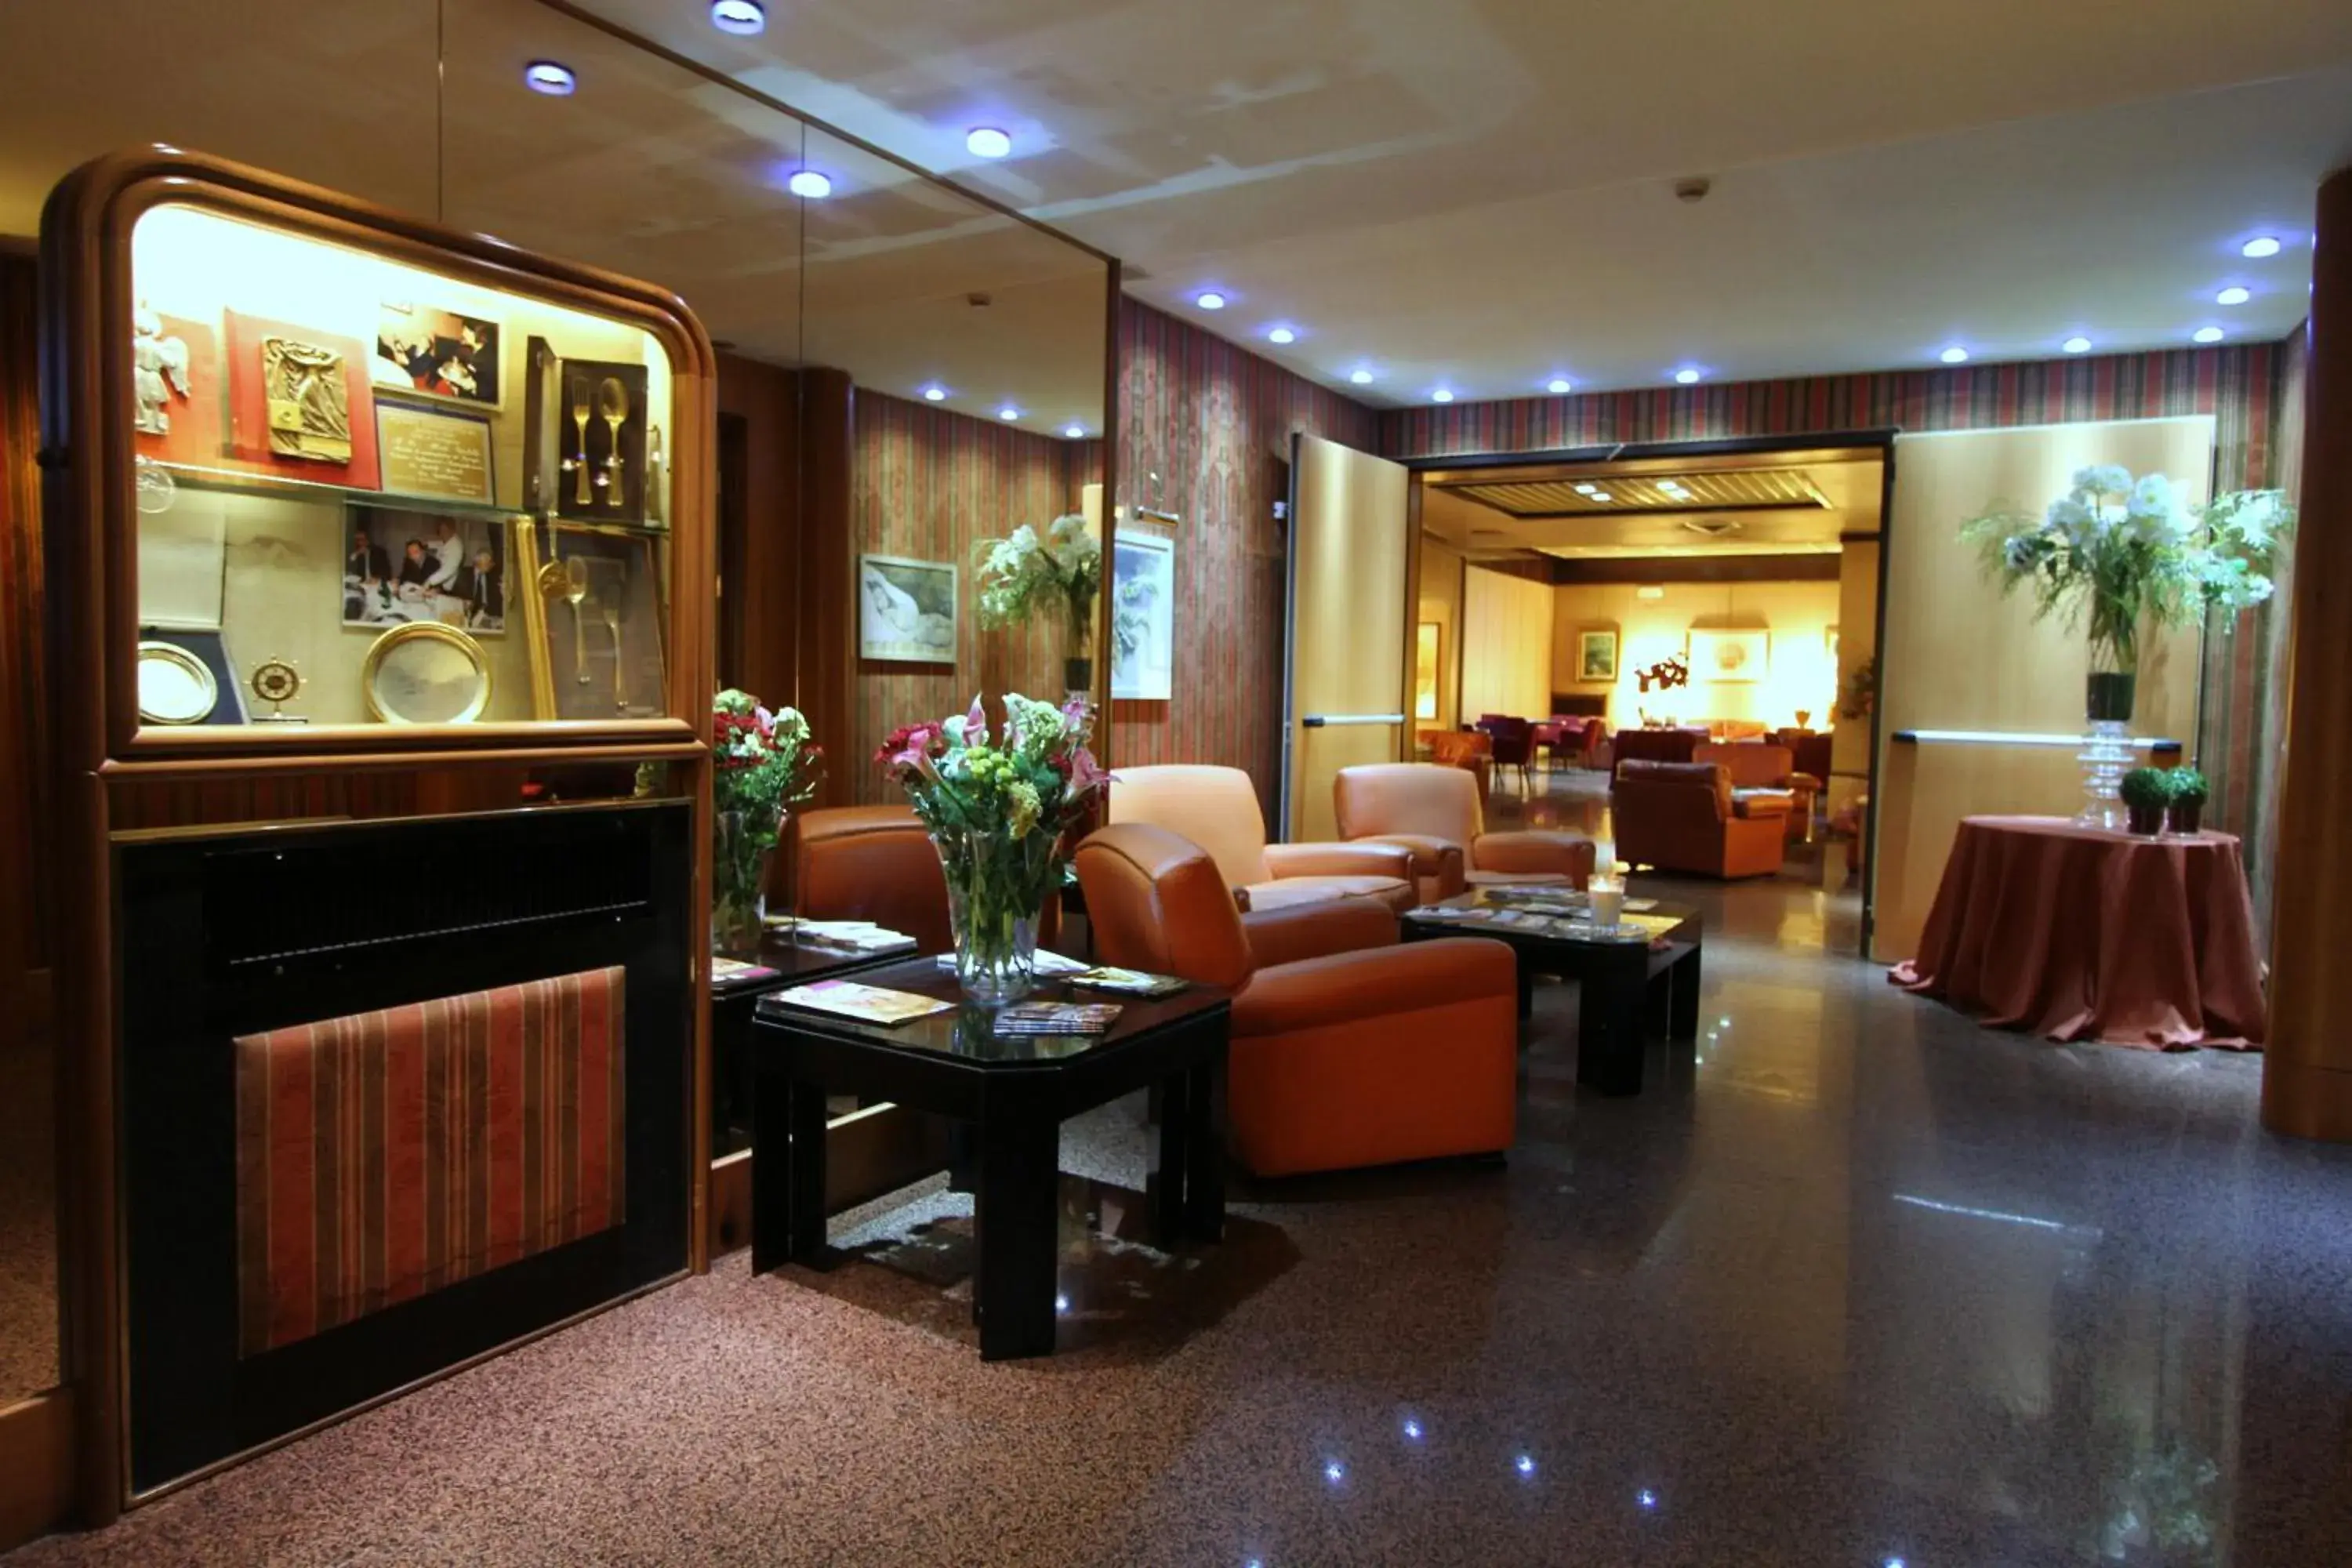 Lobby or reception, Lobby/Reception in Hotel Cicolella